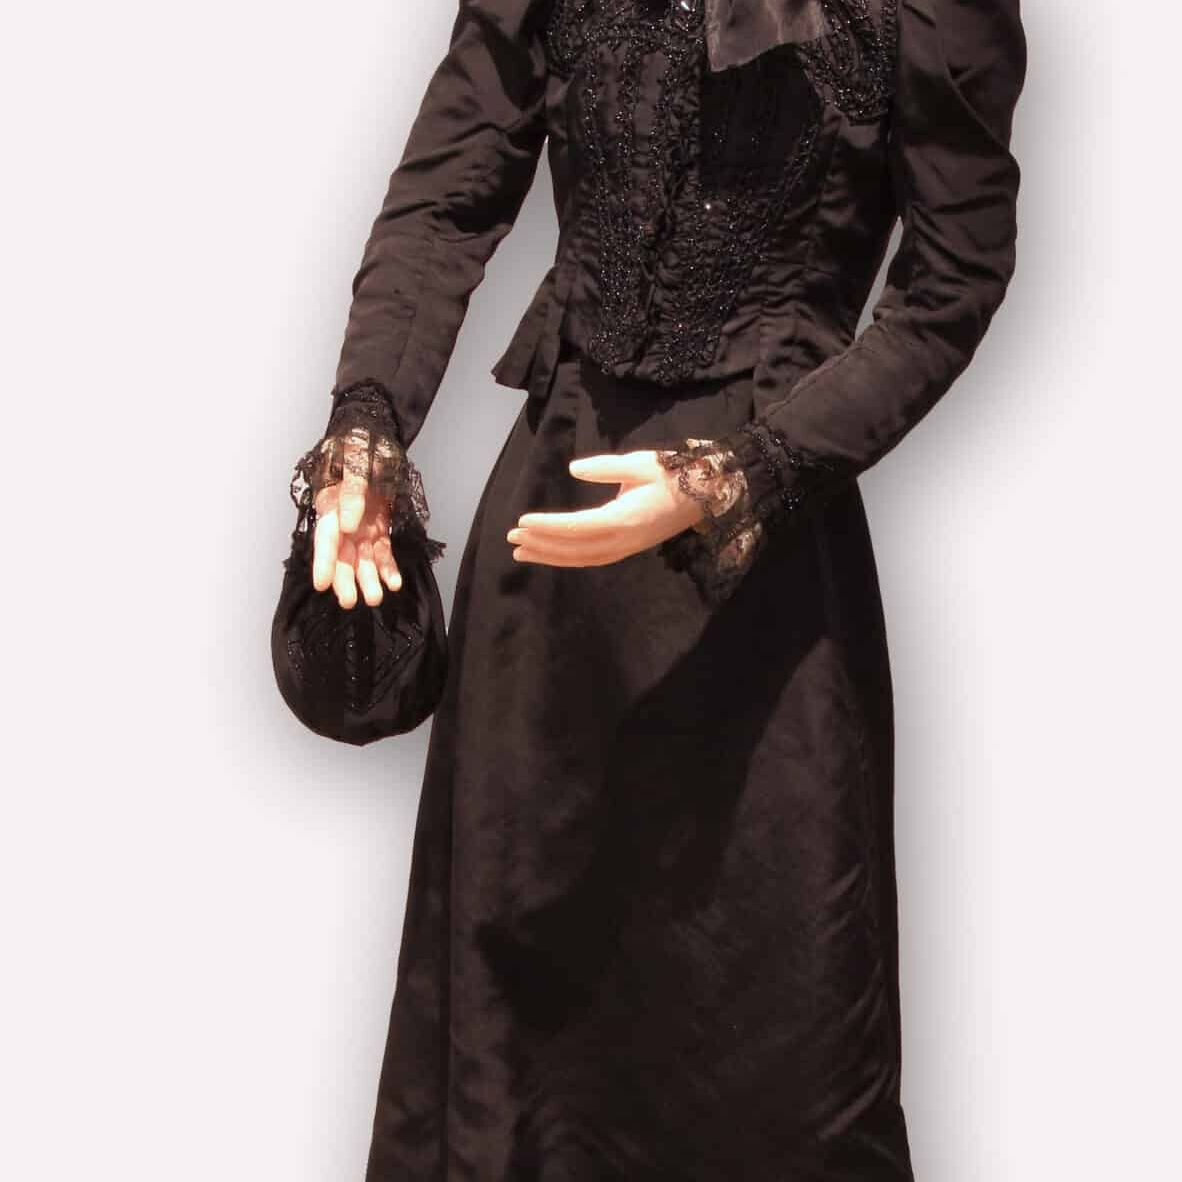 zwarte trouwjurk tentoongesteld in de expositie 'Van onder tot boven' over dameskleding in de periode 1880 tot heden van Museum De Schilpen